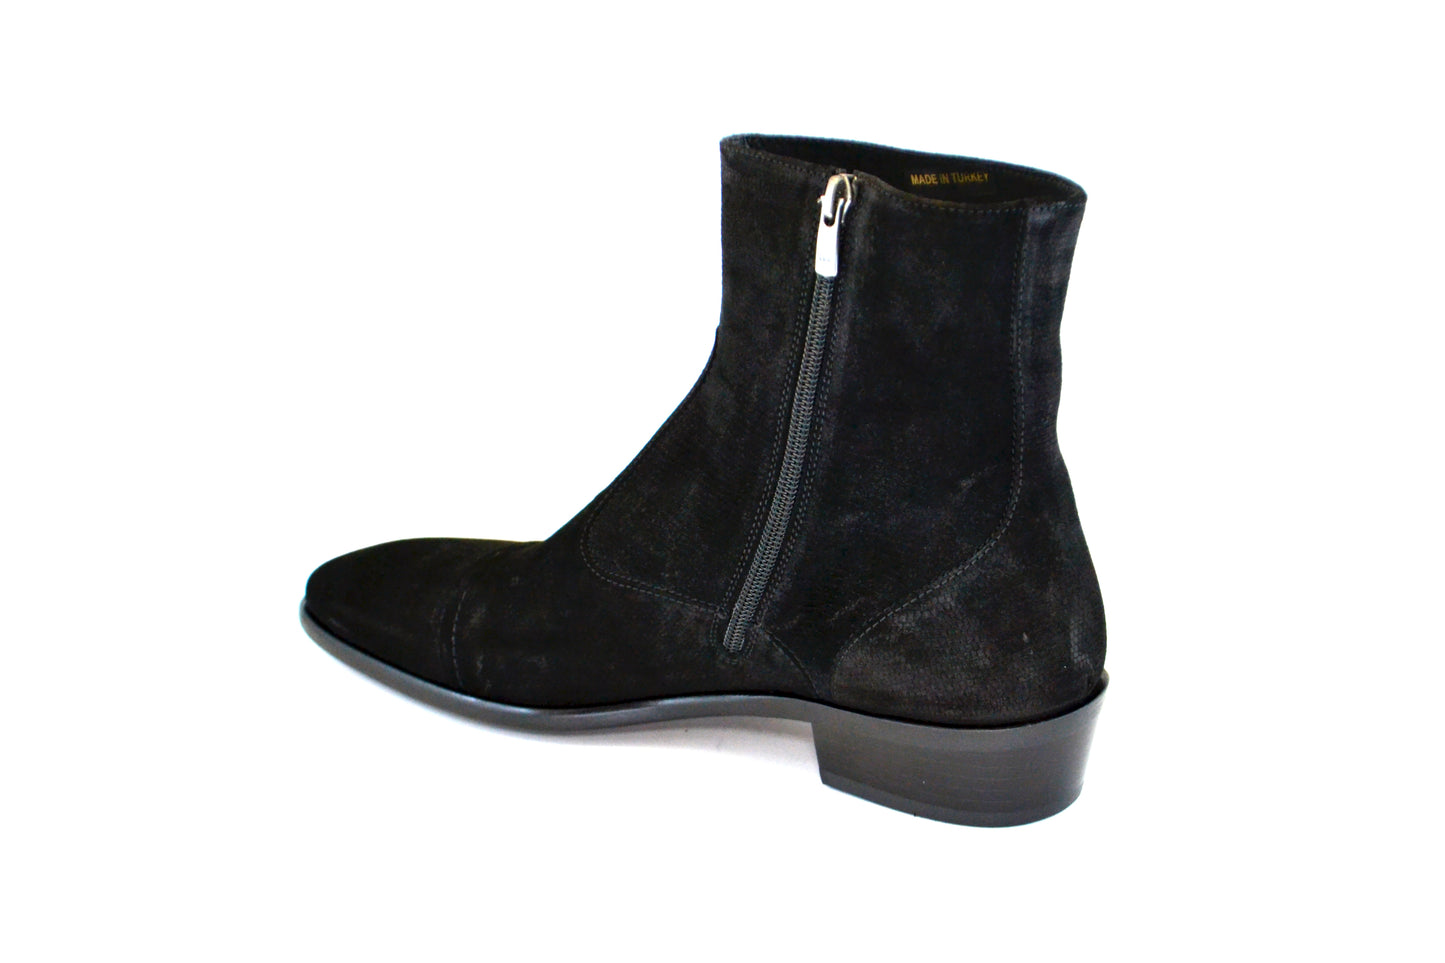 C191-1547 Cap toe side zipper boot-Lizard Black Suede